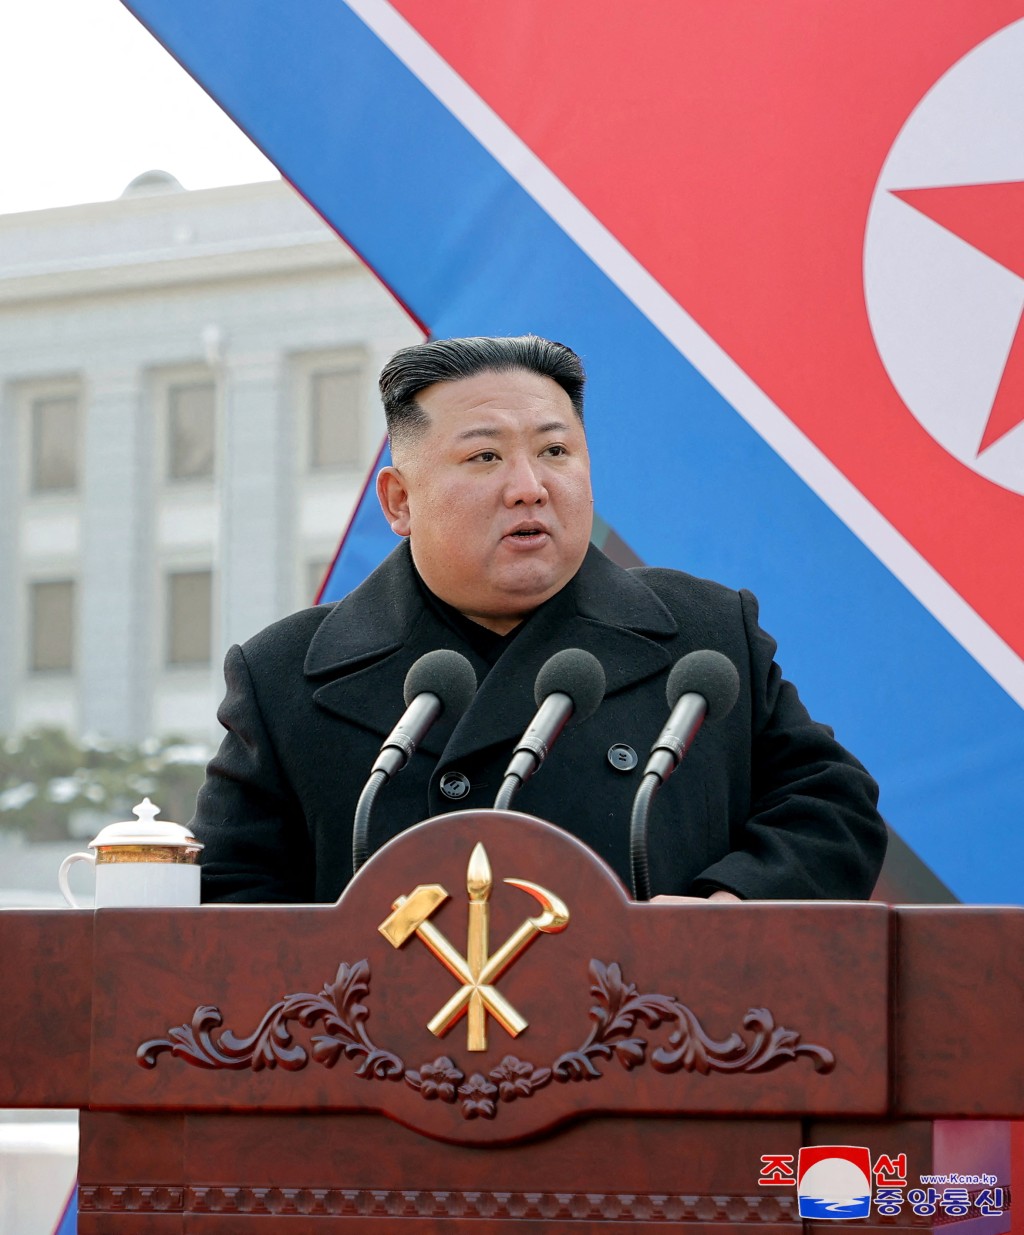 北韓領導人金正恩最近也呼籲大幅增加平壤的核武數量。 路透社